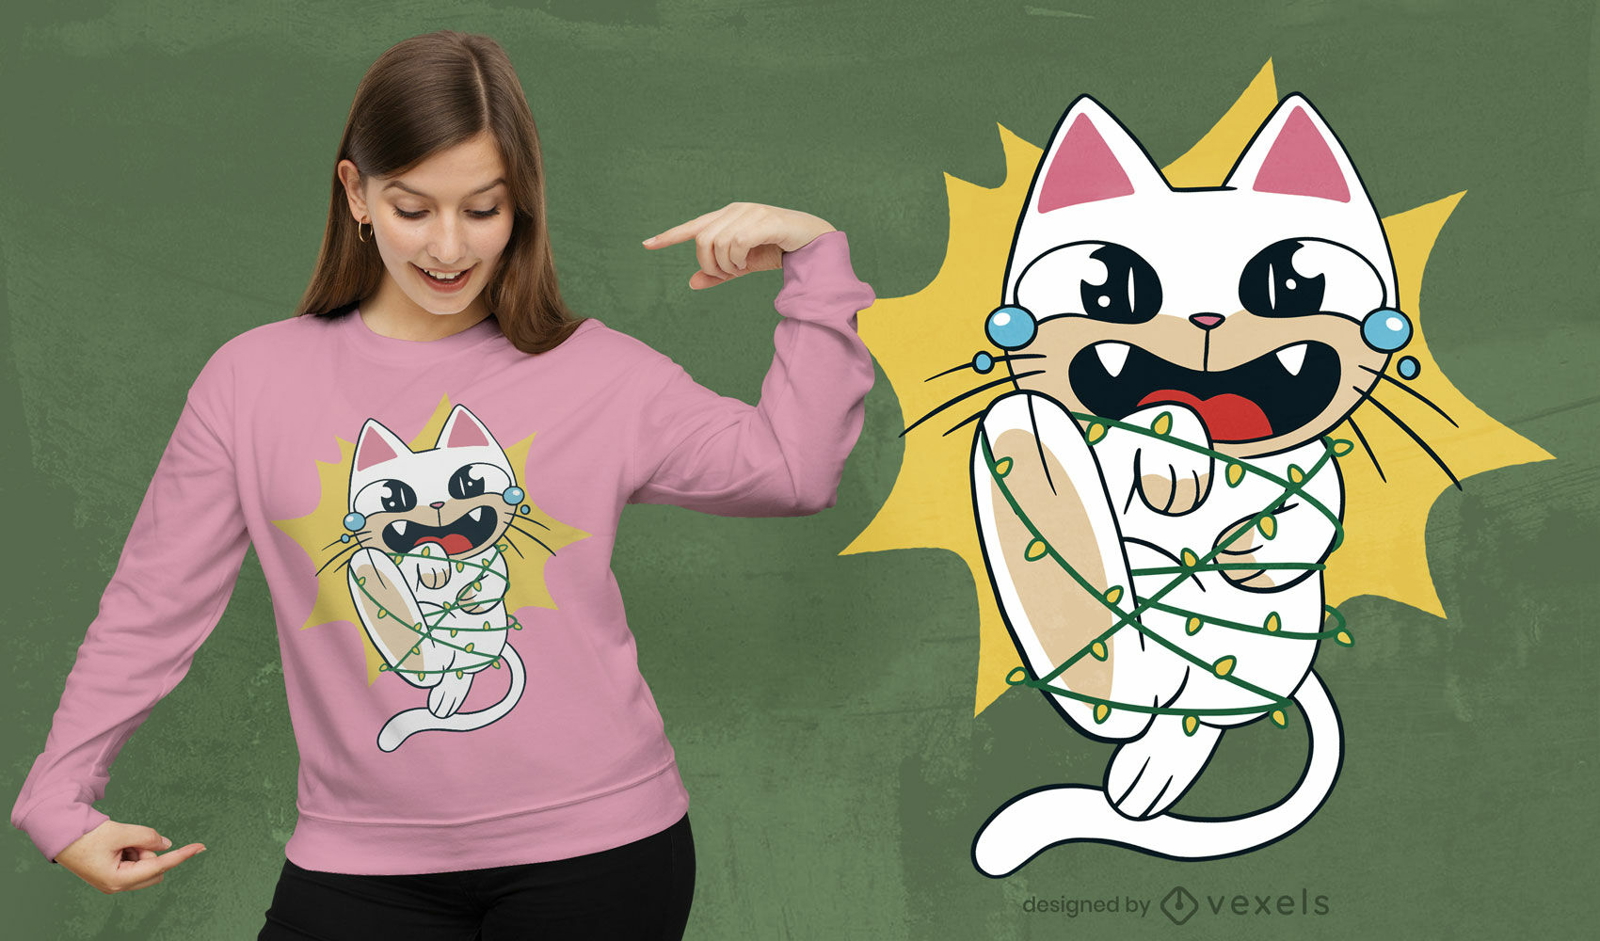 Katze im T-Shirt-Design mit Weihnachtsbeleuchtung verheddert